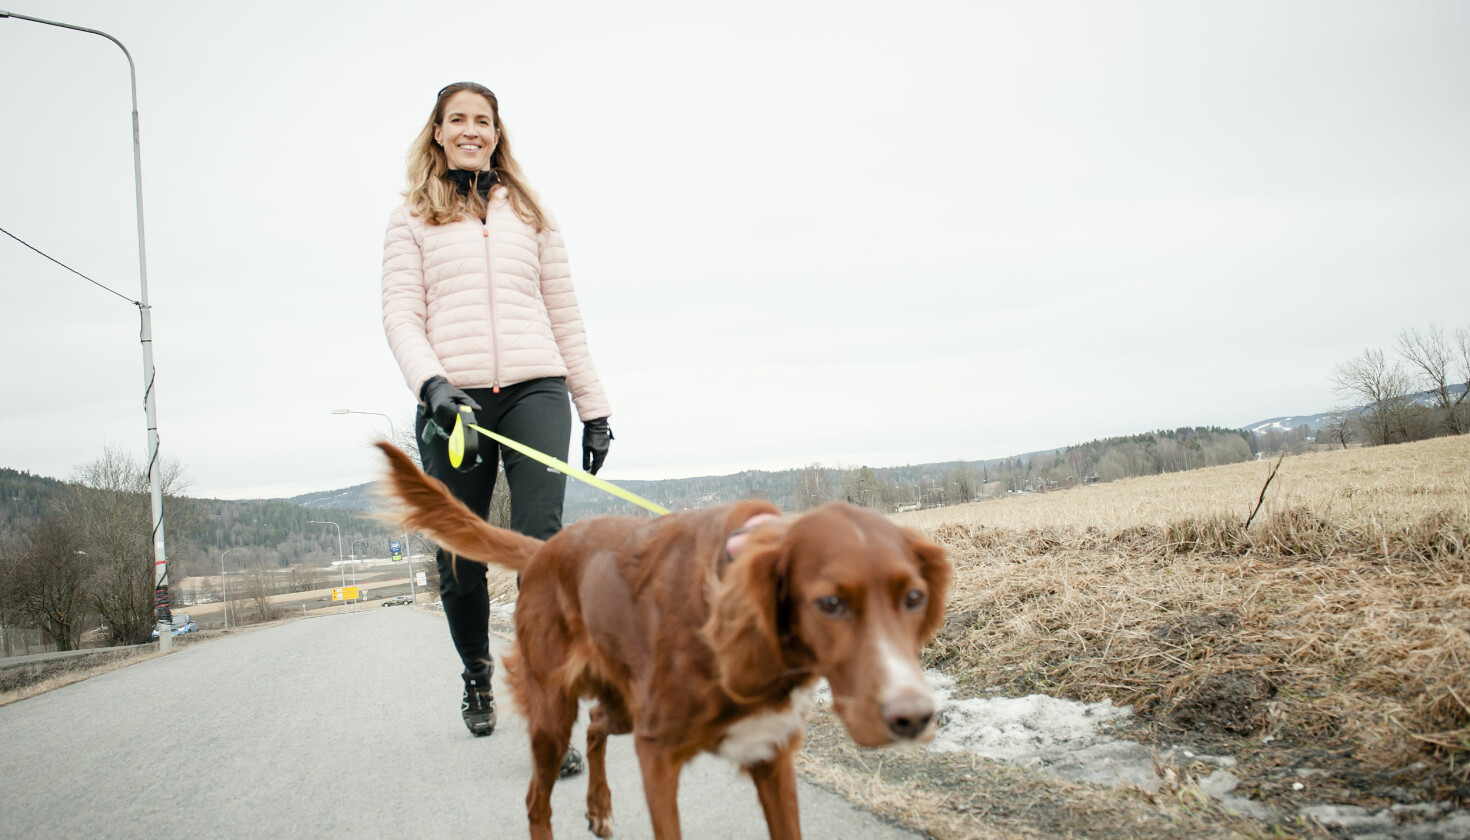 TURVENN: Heidi E. Kristiansen har hatt stor glede av hunden Fia, spesielt etter kreftdiagnosen.